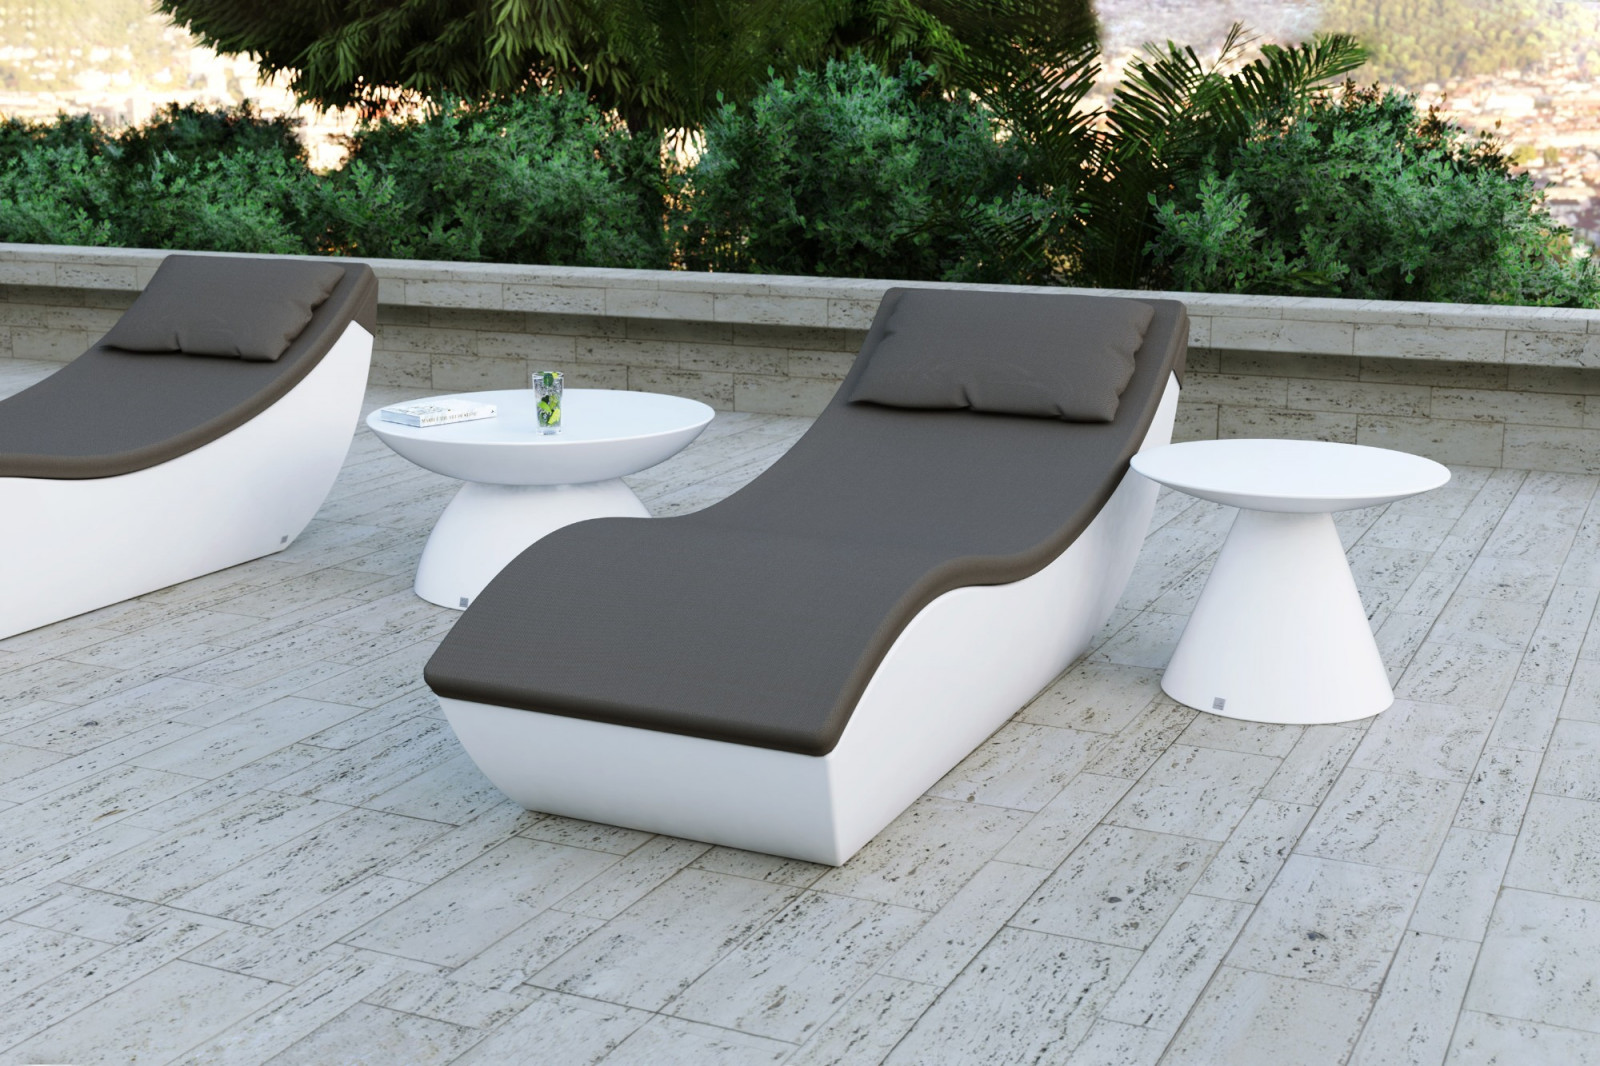 coffee-table-set-outdoor-terrace-garden-pool-elegant-white-matte-oceano-gansk-0-2642-1600-1400-100